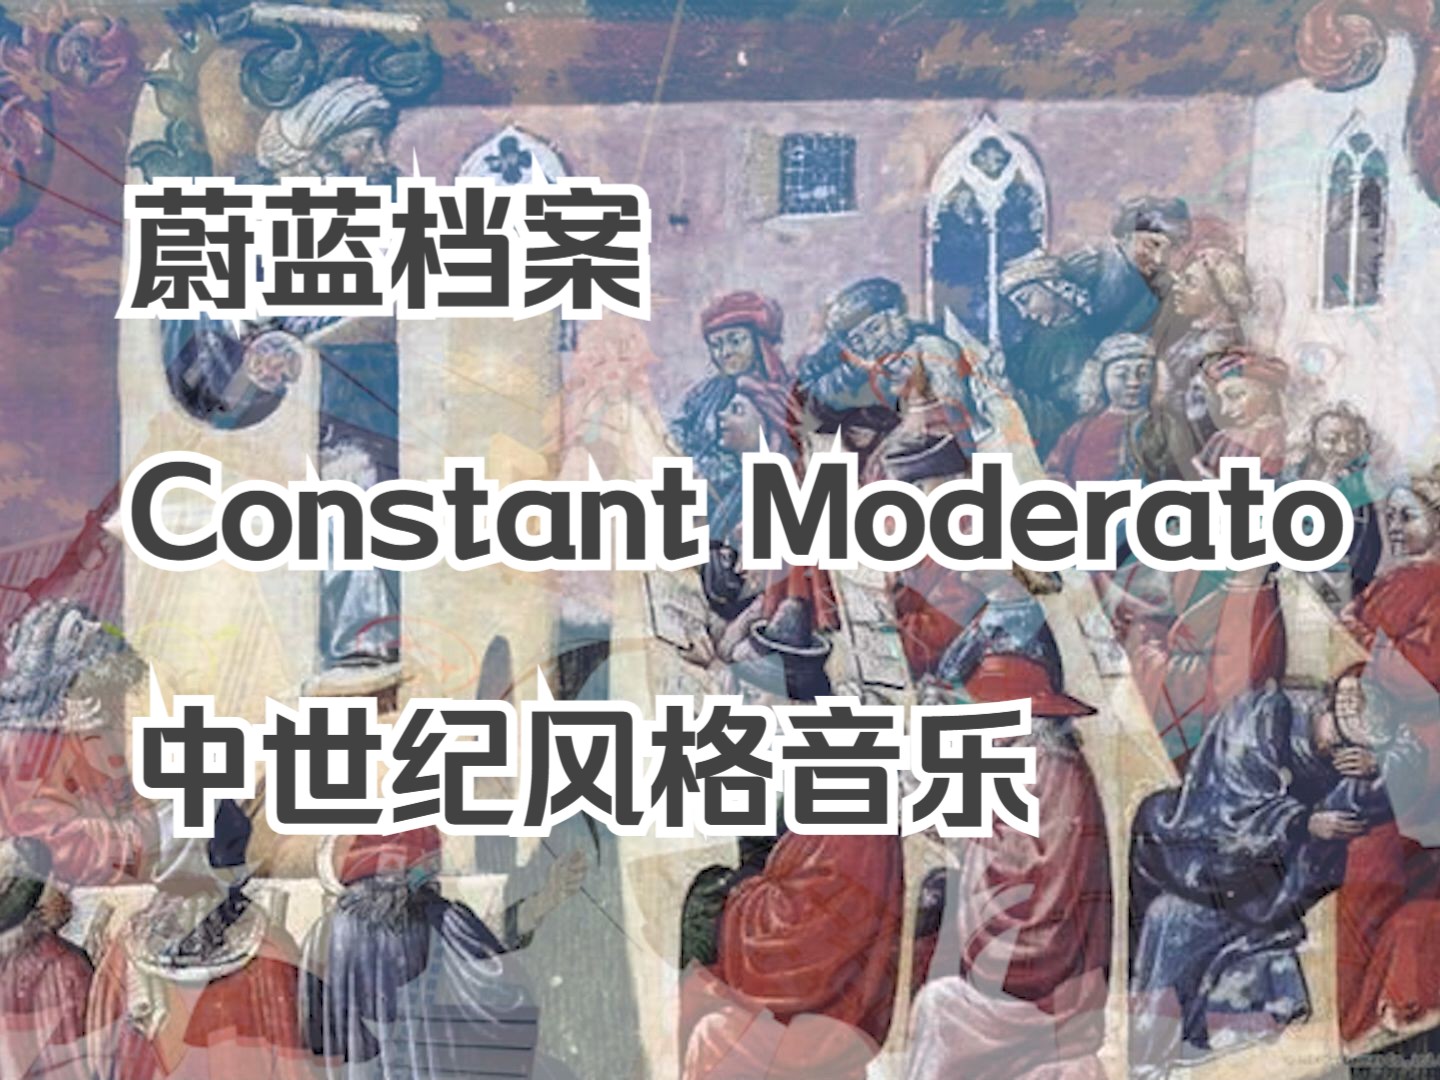 【中世纪】蔚蓝档案Constant Moderato中世纪风格音乐